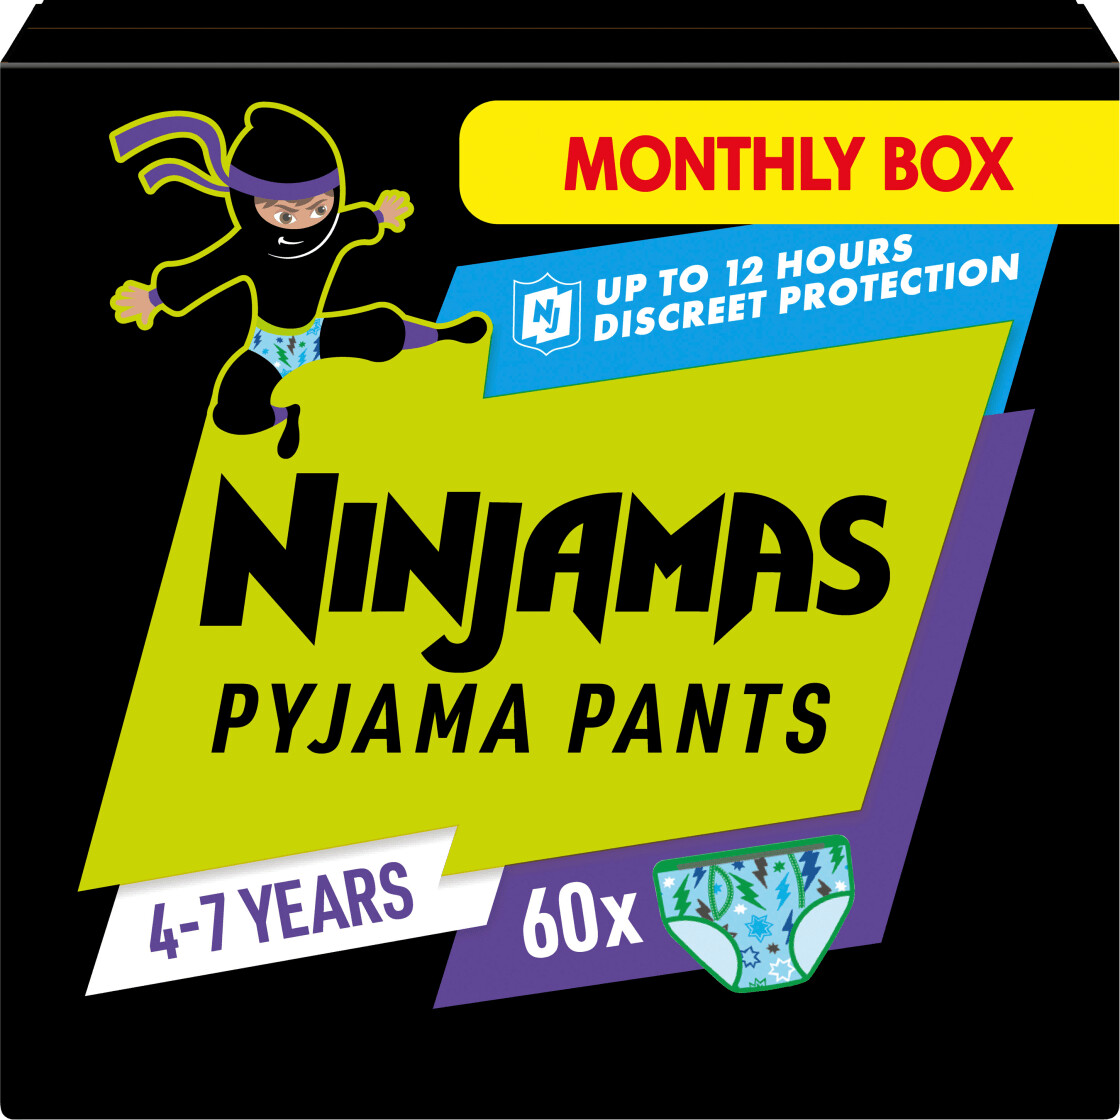 Photos - Nappies Pampers Ninjamas Pyjama Pants blue 4-7years old 60 pieces 